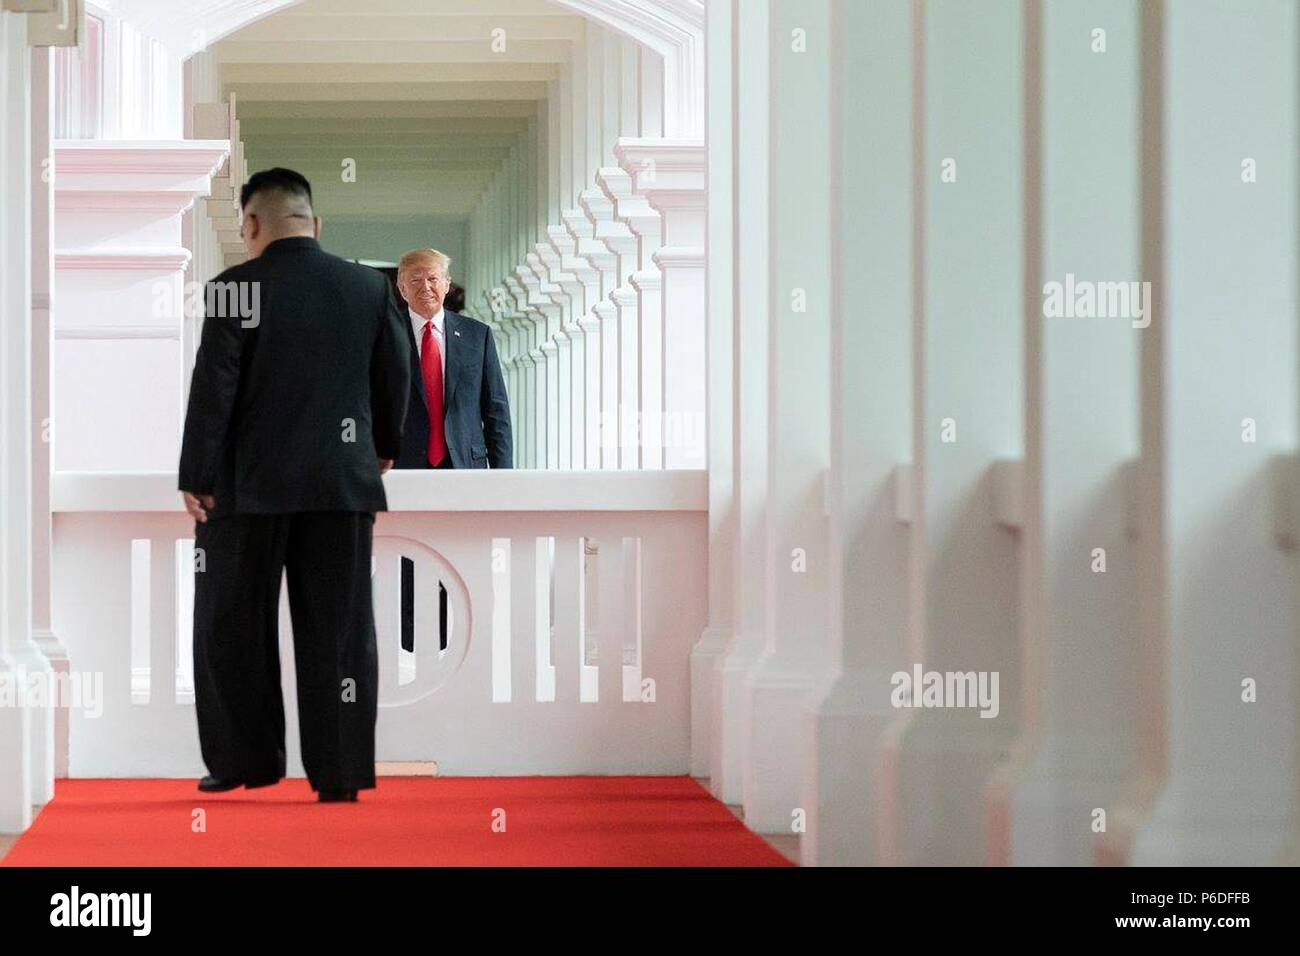 Us-Präsident Donald Trump Uhren nordkoreanischen Führer Kim Jong Un gehen auf ihn zu Beginn des historischen Gipfeltreffen der Capella resort Juni 12, 2018 in Insel Sentosa, Singapur. Stockfoto